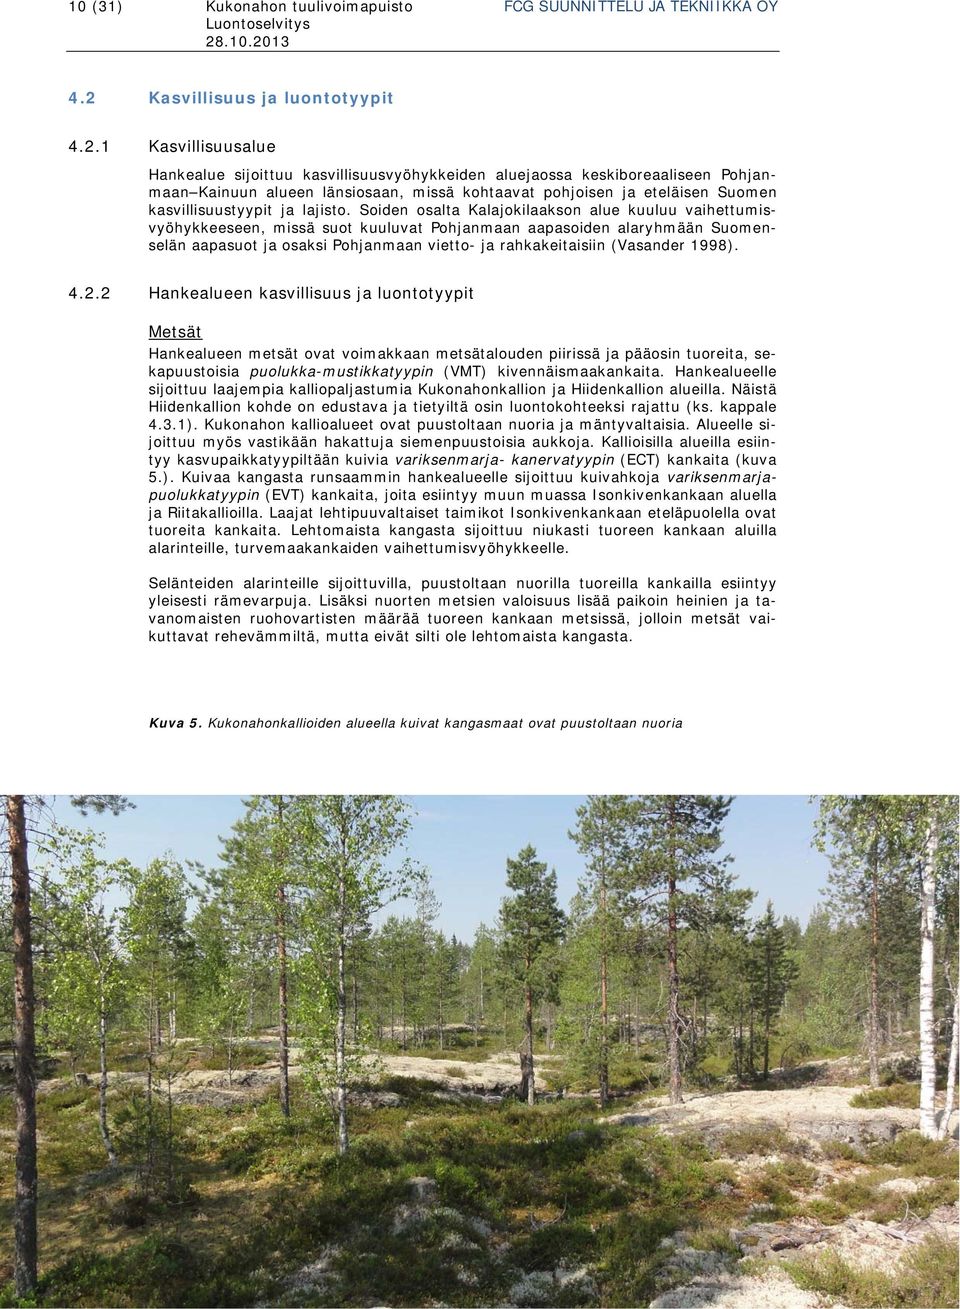 1 Kasvillisuusalue Hankealue sijoittuu kasvillisuusvyöhykkeiden aluejaossa keskiboreaaliseen Pohjanmaan Kainuun alueen länsiosaan, missä kohtaavat pohjoisen ja eteläisen Suomen kasvillisuustyypit ja